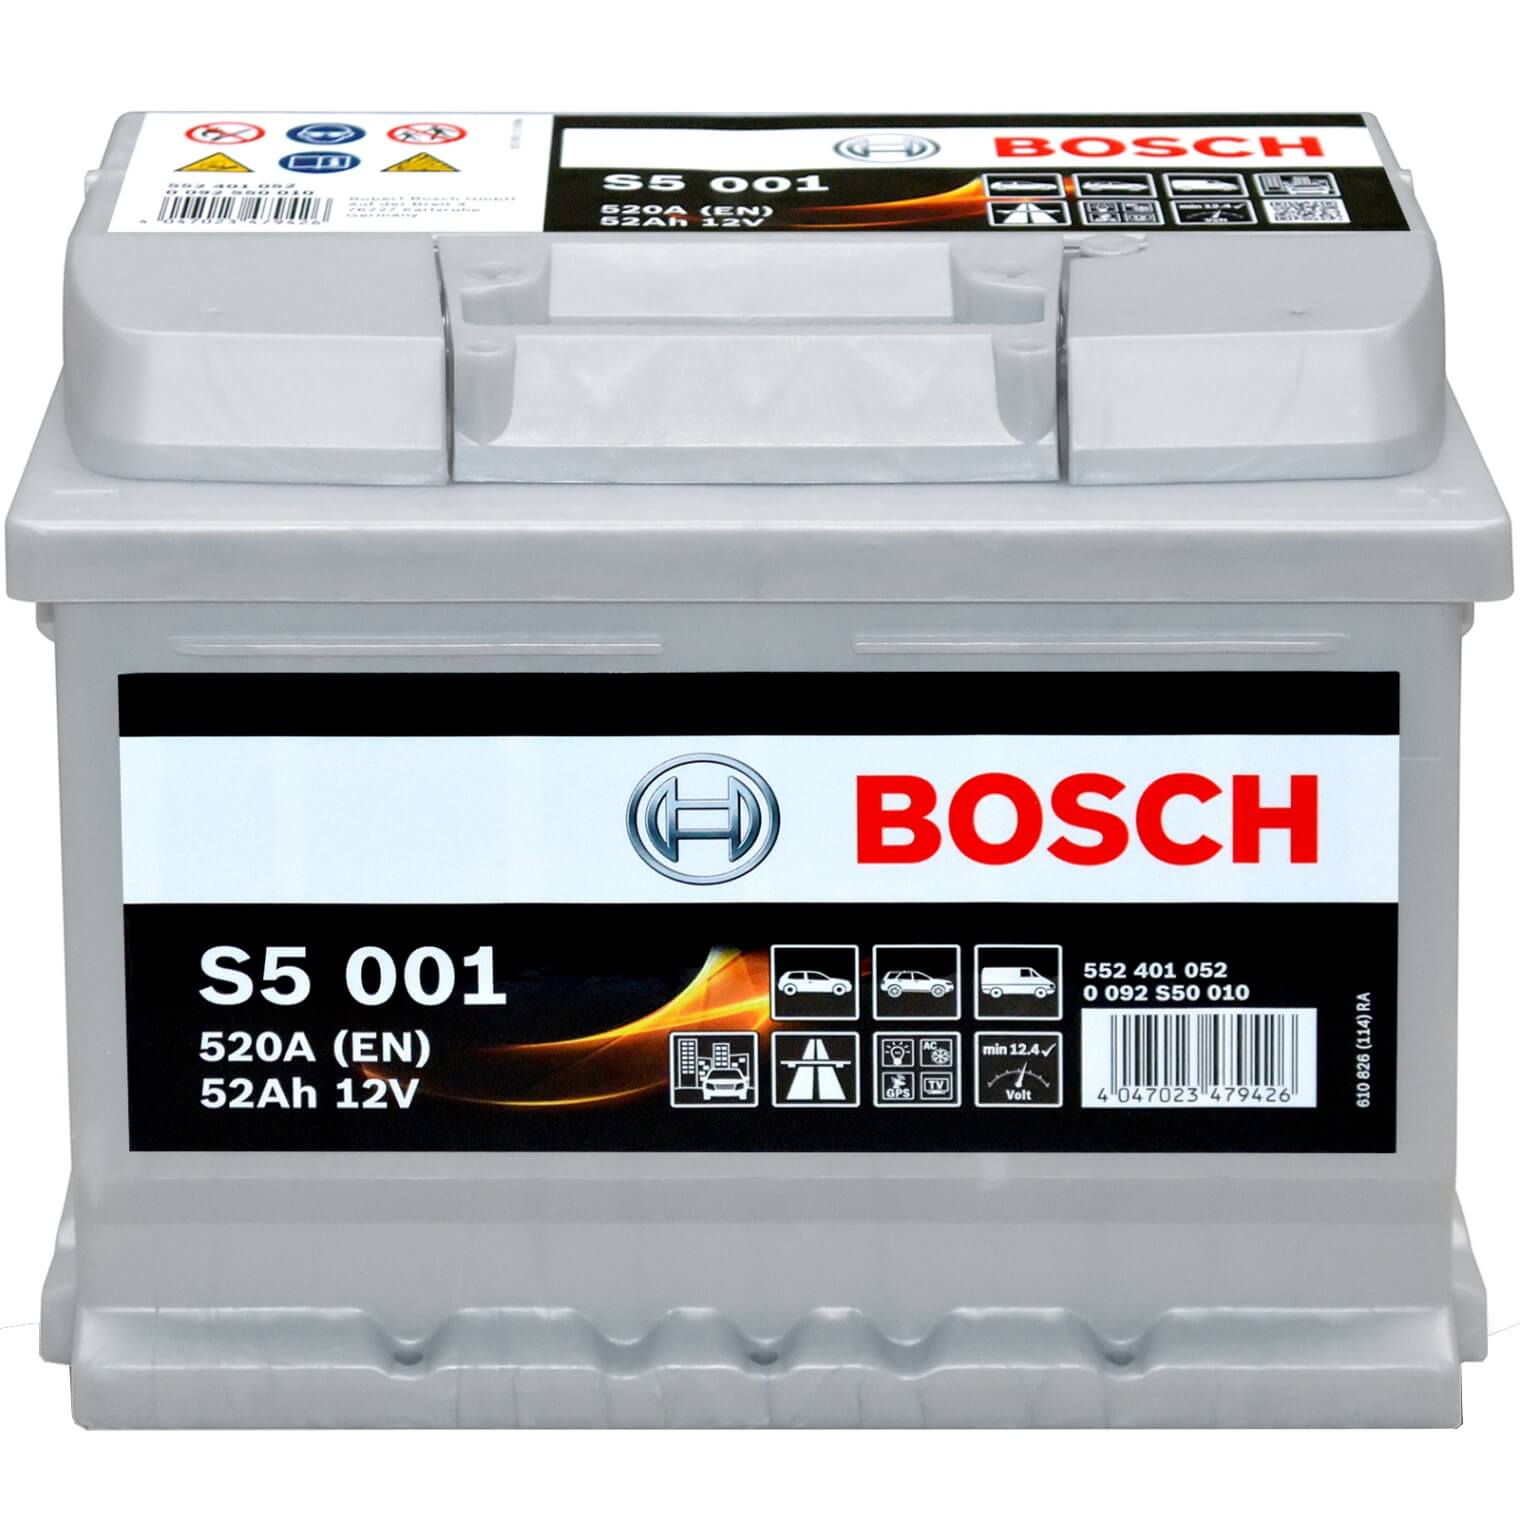 Bosch S5001 12V 52Ah 520A/EN